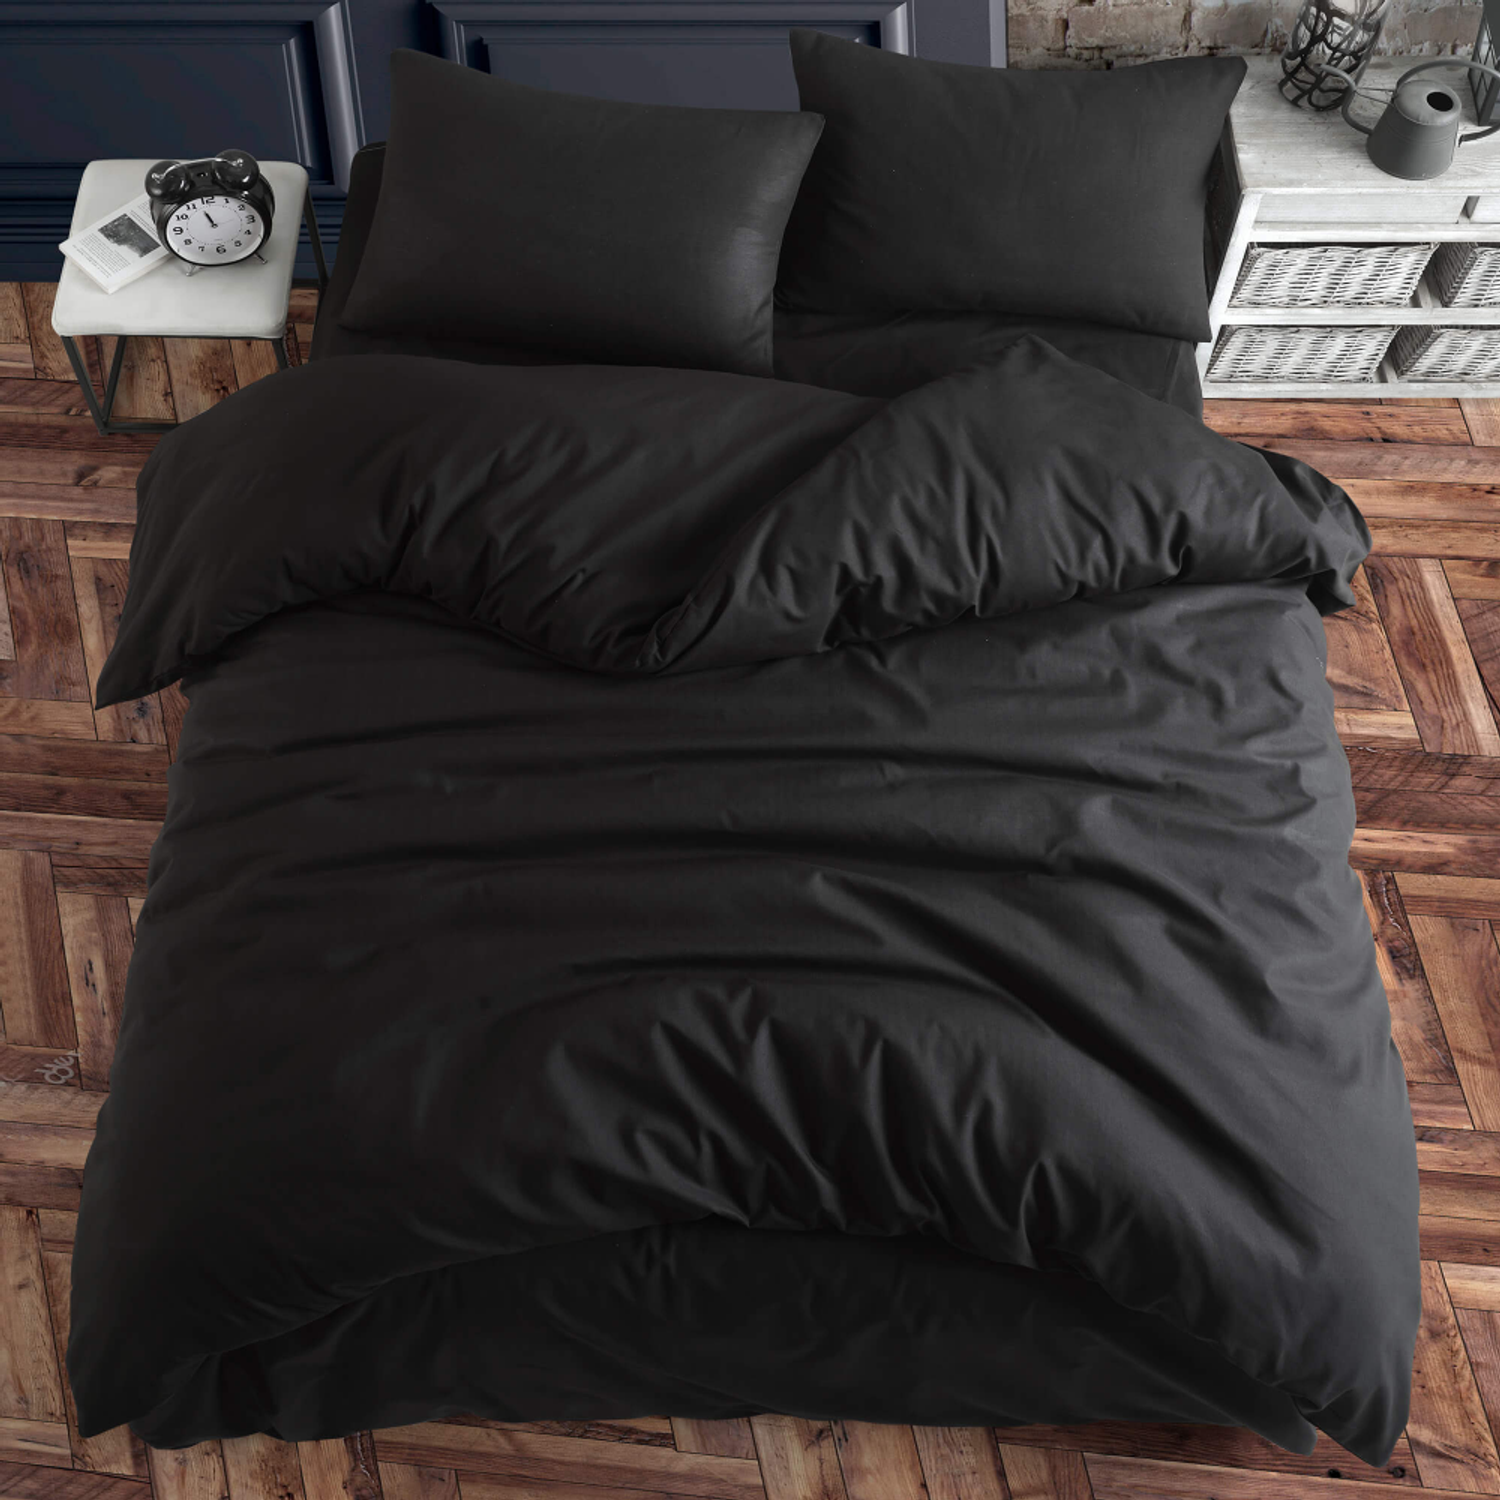 Комплект постельного белья ATLASPLUS размер ЕВРО ранфорс хлопок цвет черный - фото 2